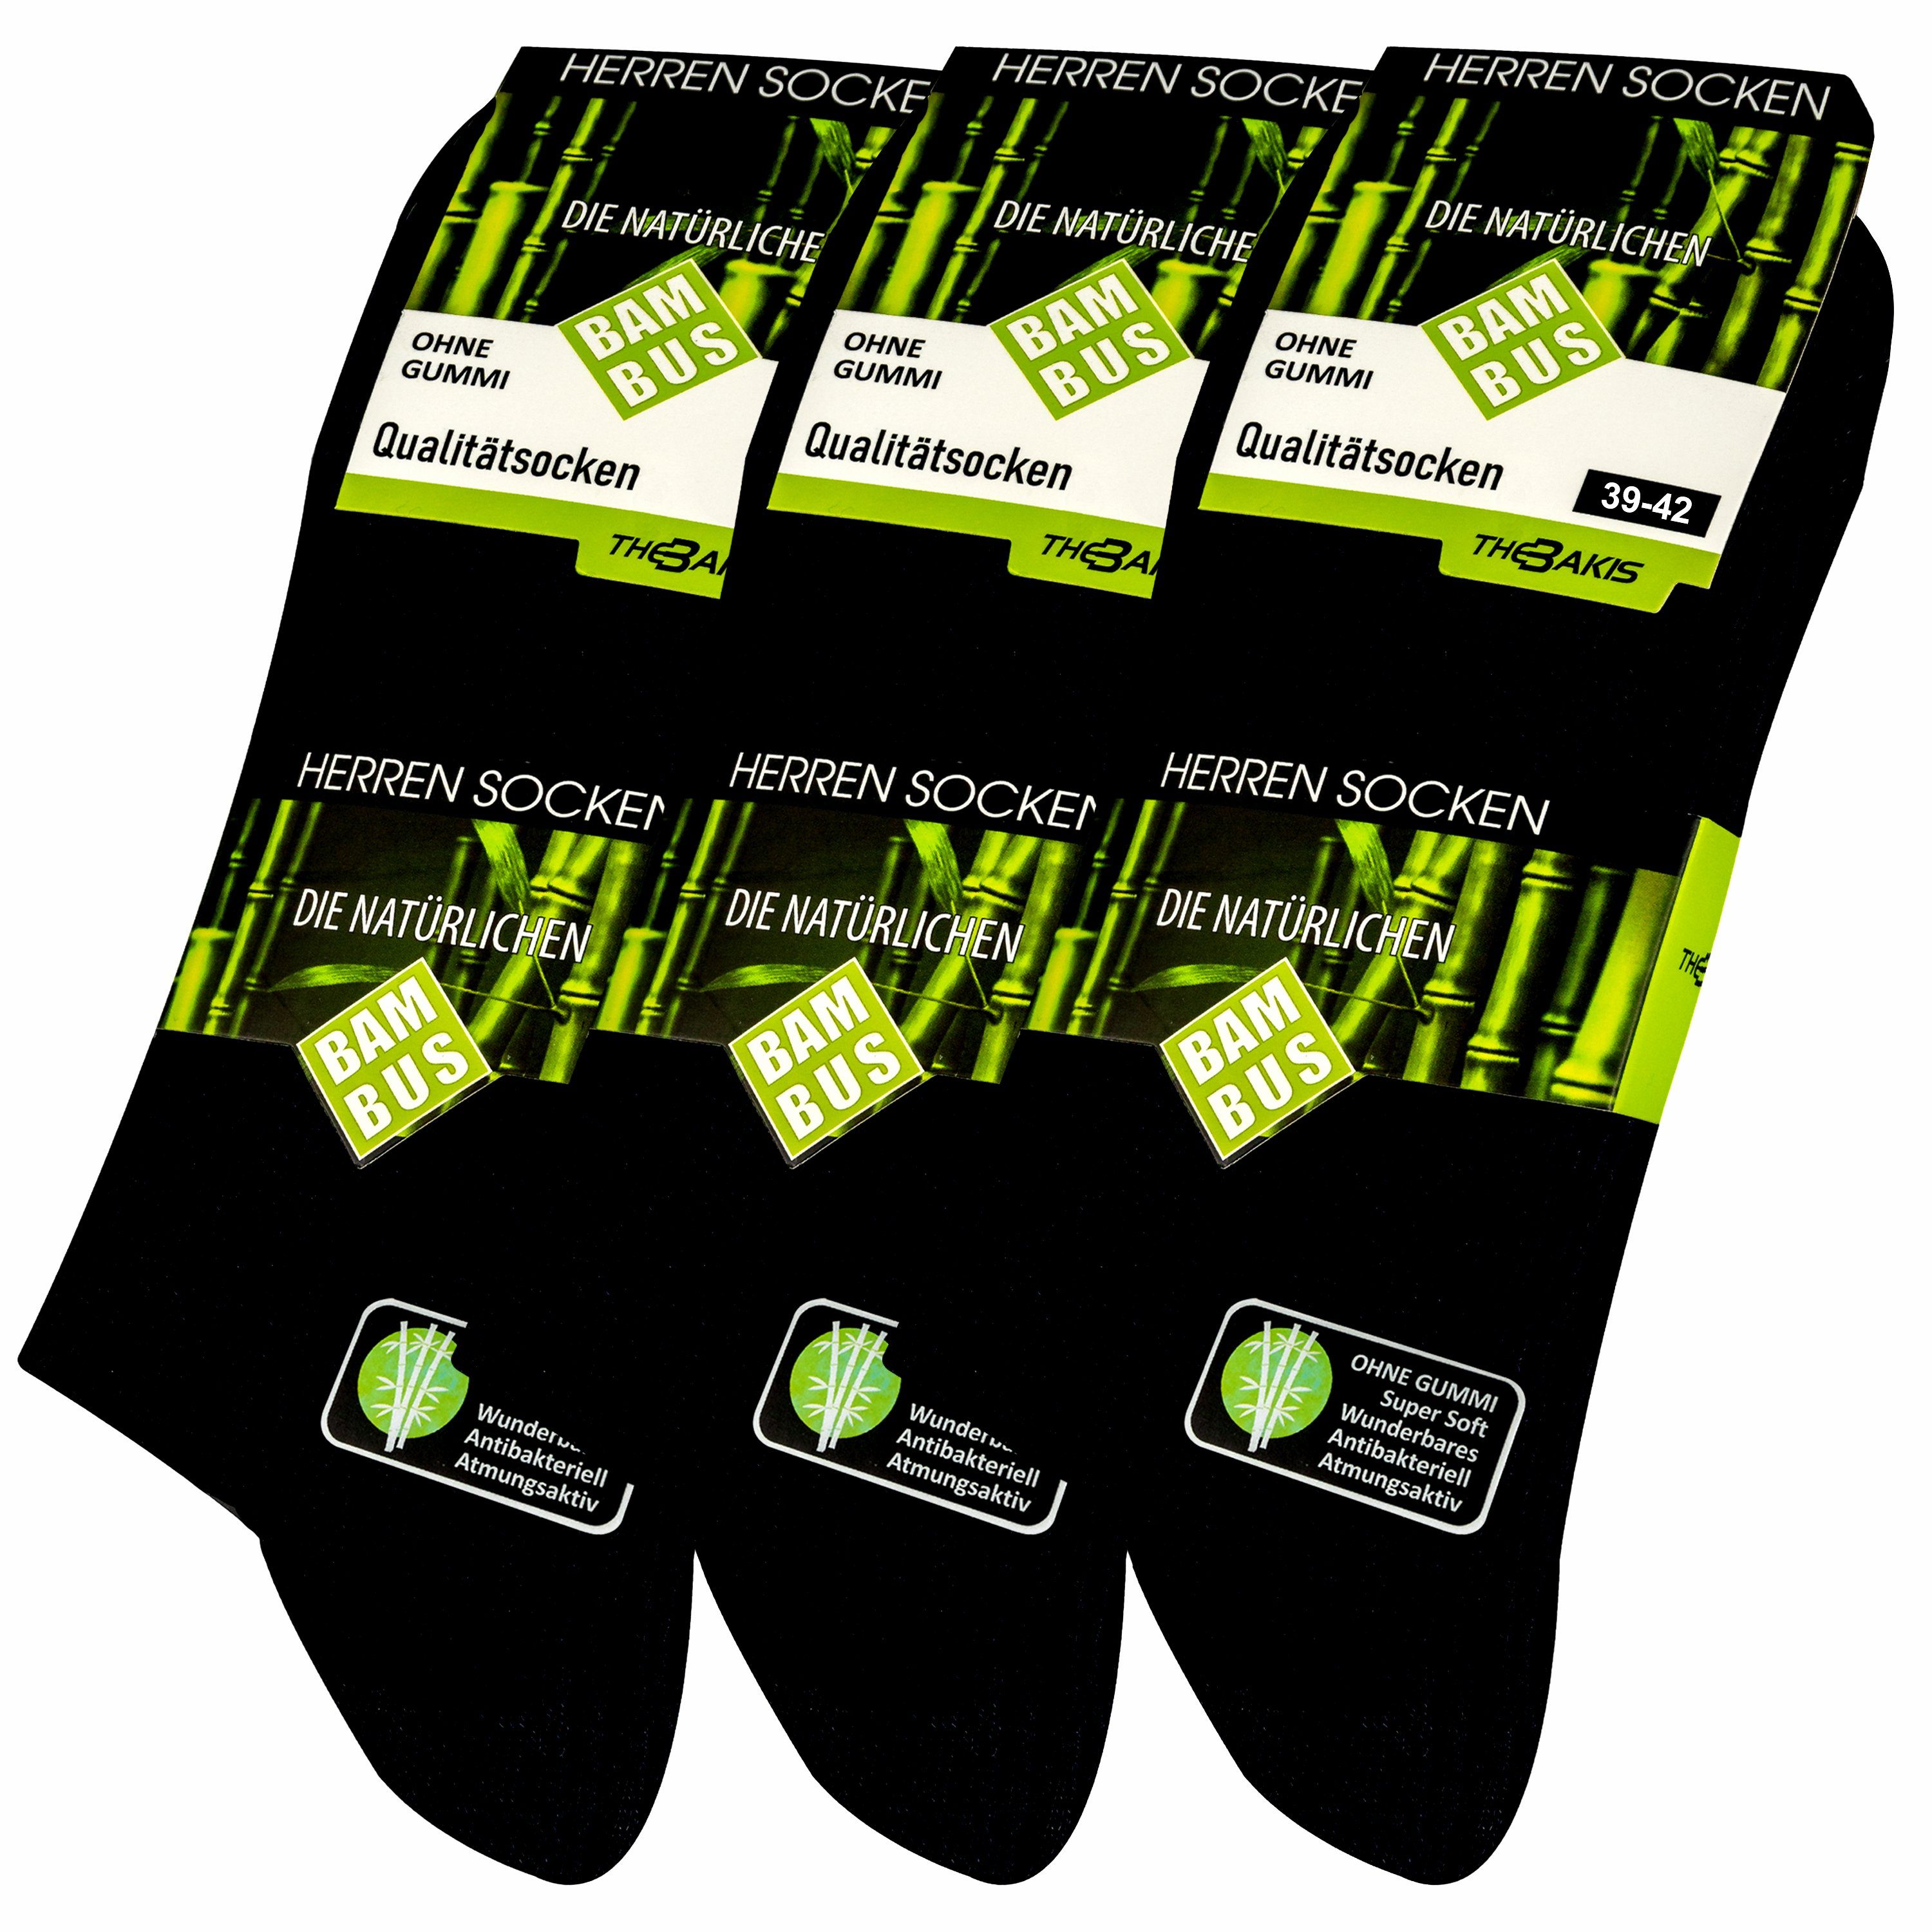 TEXEMP Gesundheitssocken 3 oder 6 Paar Diabetiker Socken ohne Gummi Damen Herren Socken ohne Naht Mehrfarbig Gesundheitssocken (Packung, 3-Paar, 3 oder 6 Paar) Schwarz